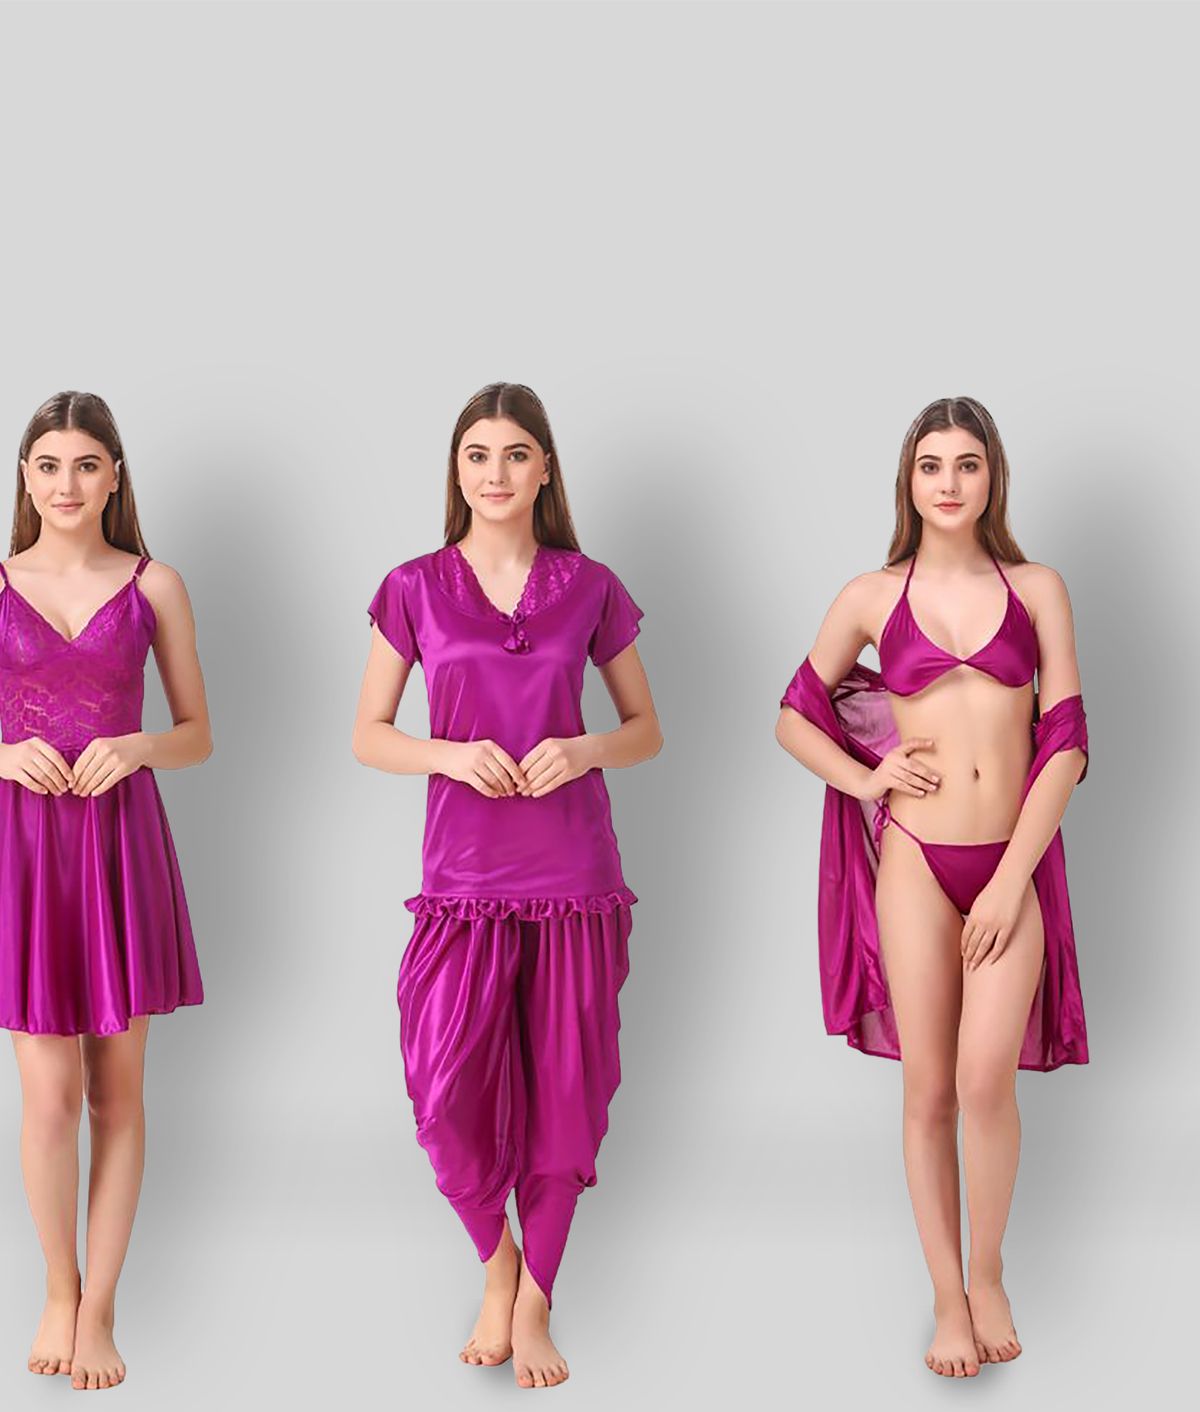     			Romaisa - Purple Satin Women's Nightwear Night Dress